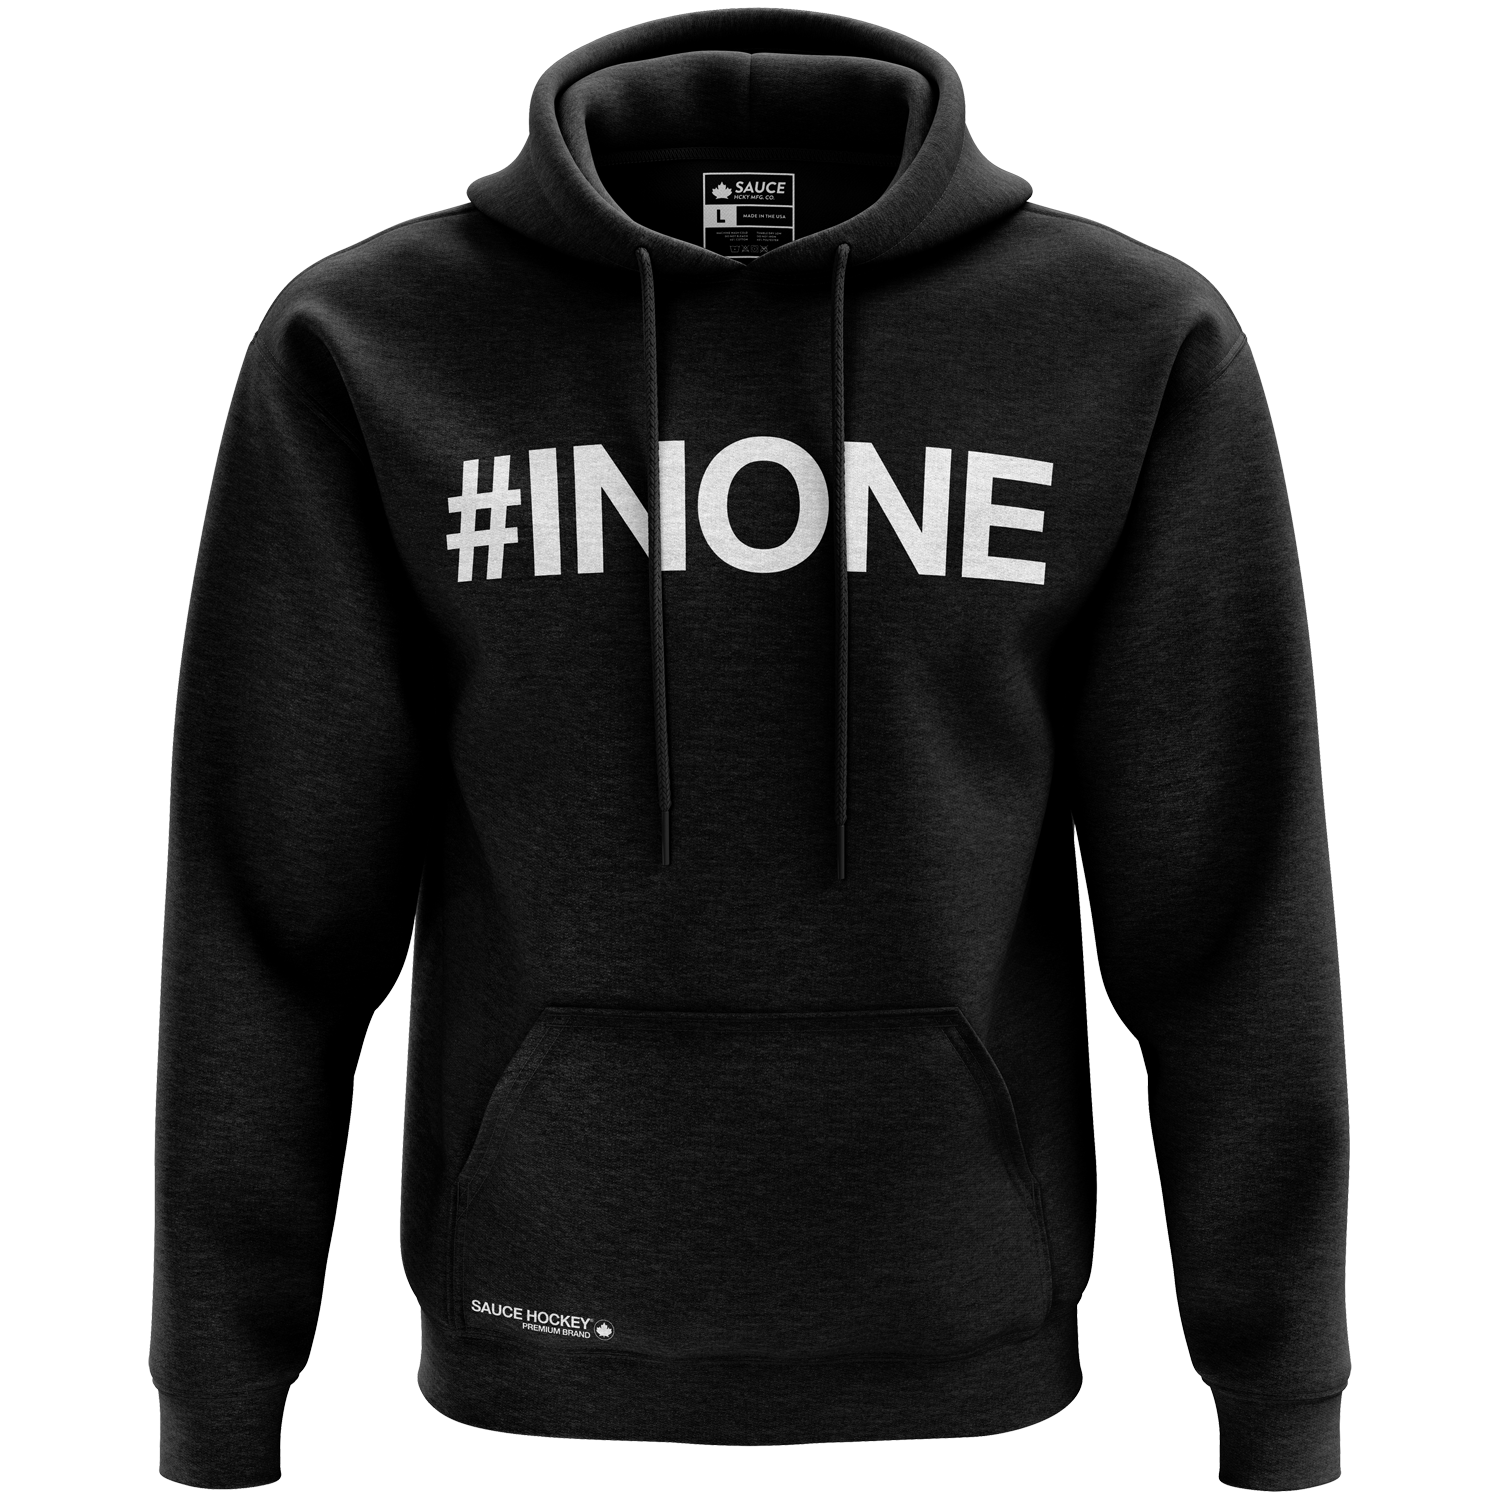 #INONE – Sauce Hockey